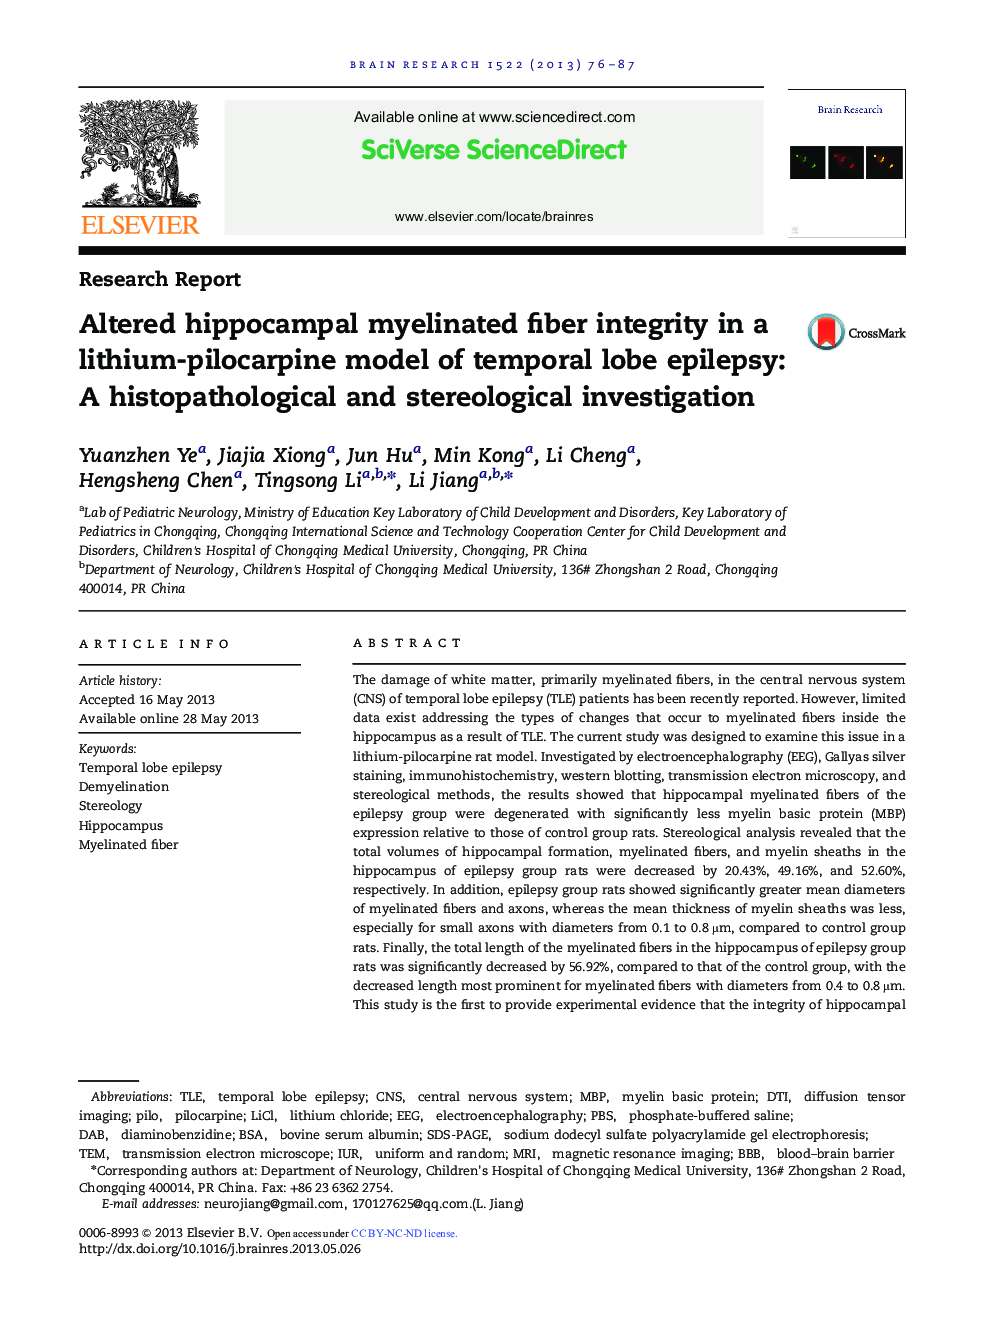 یکپارچگی فیبرهای میلینین هیپوکامپ تغییر یافته در یک مدل لیتیوم-پیلوکارپین صرع لوب تمپورال: بررسی هیستوپاتولوژی و استریولوژیک 